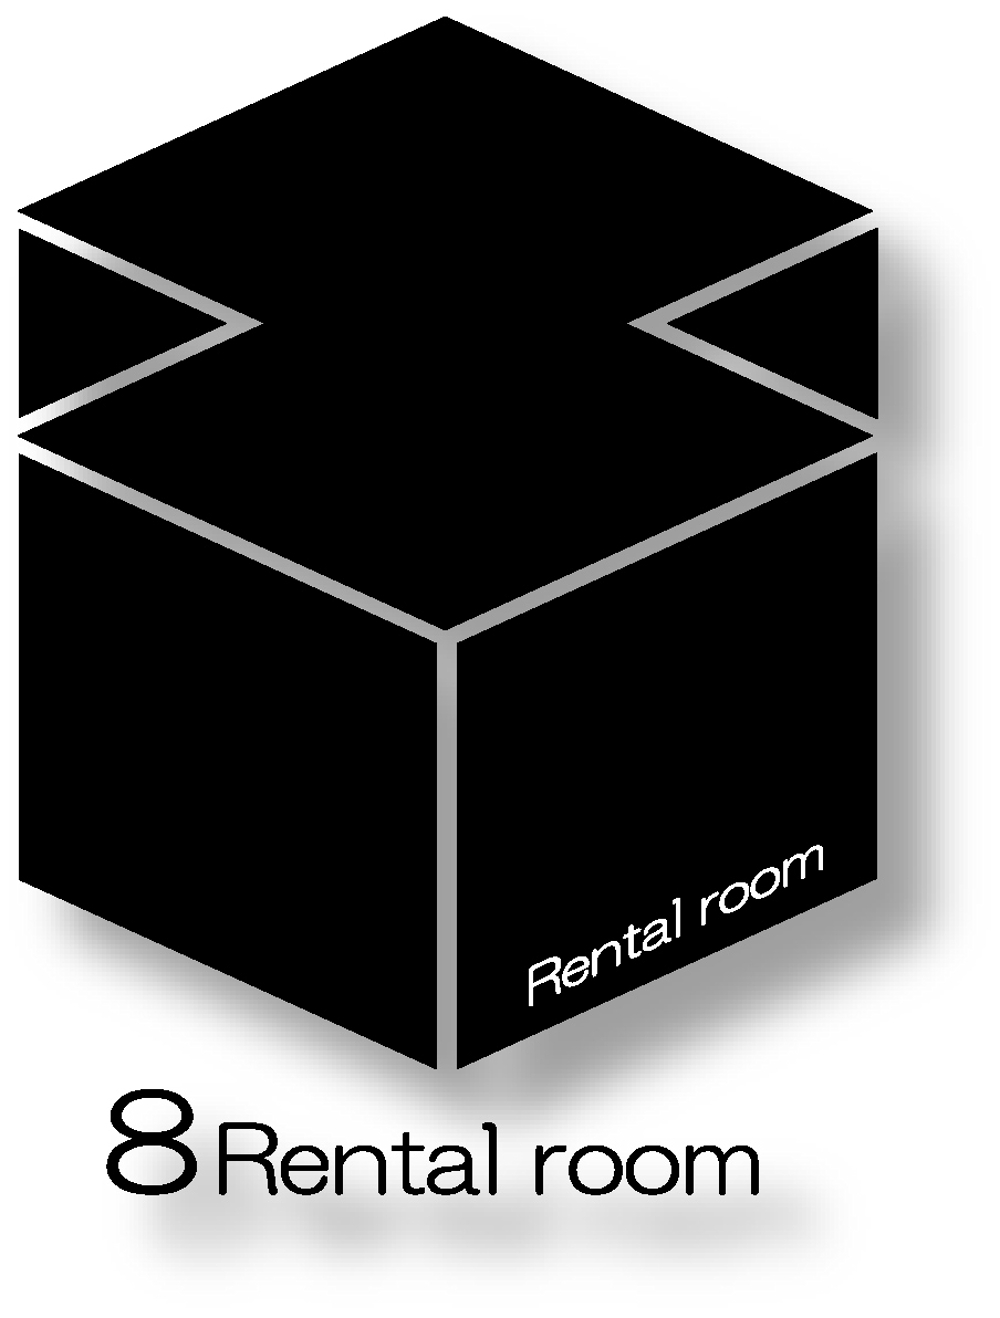 レンタルルーム「8」のロゴ(サブタイトル含む)